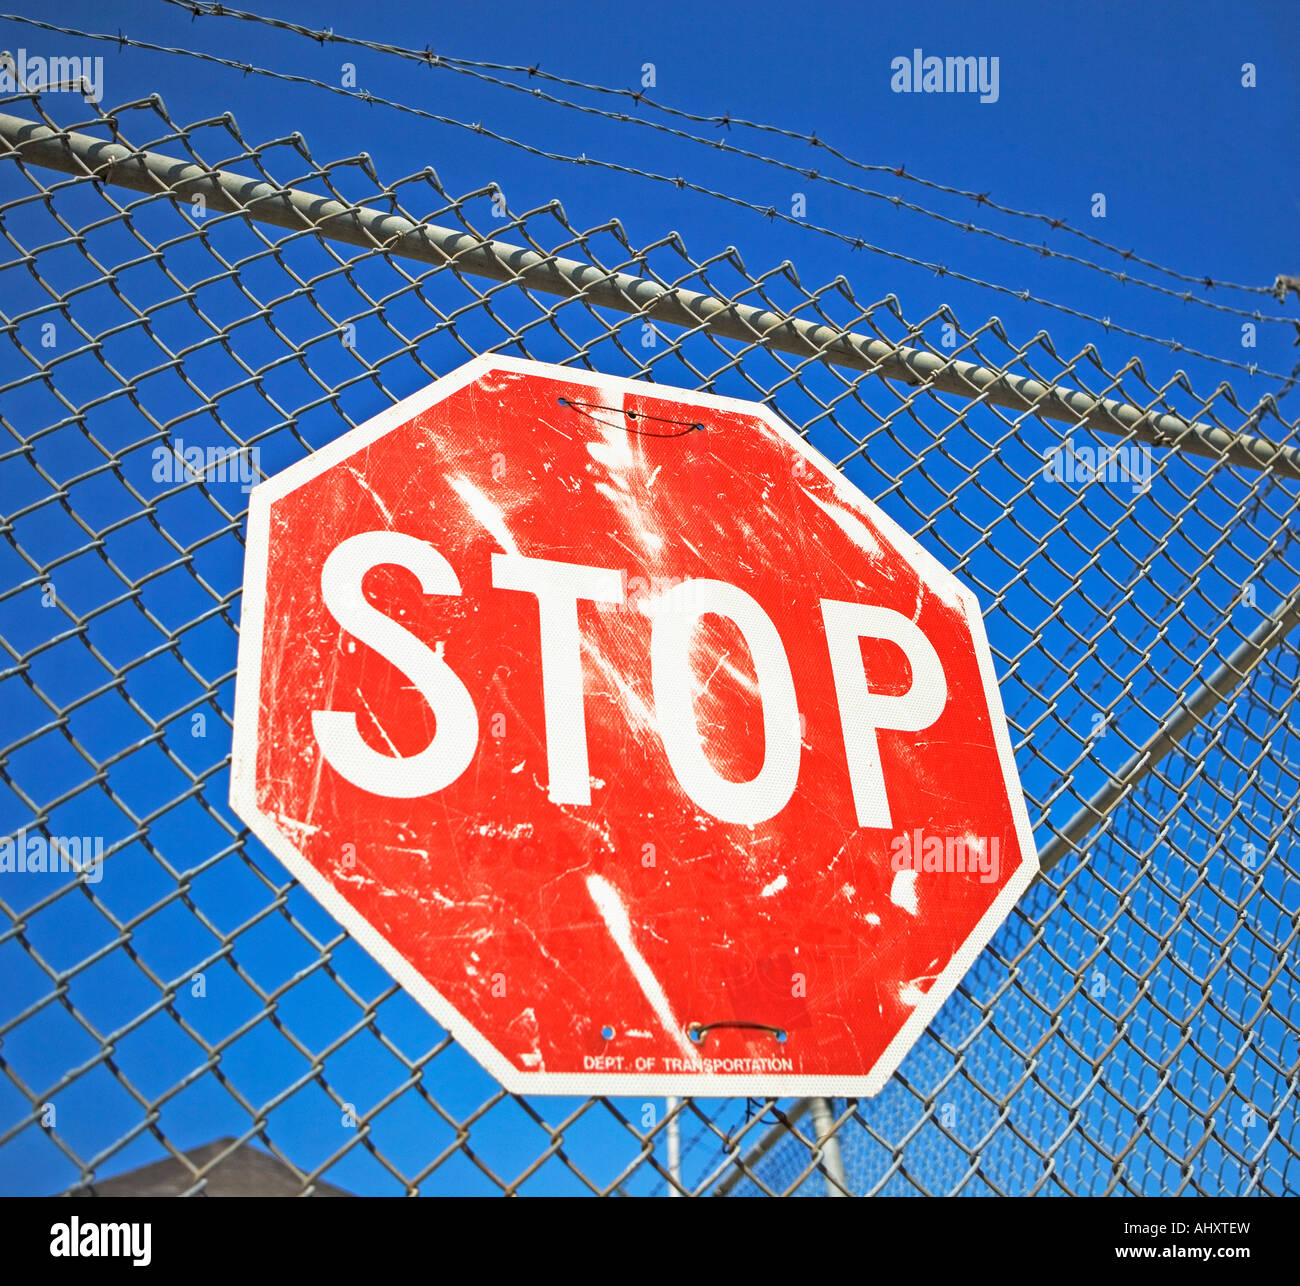 La señal de stop en el cerco Foto de stock